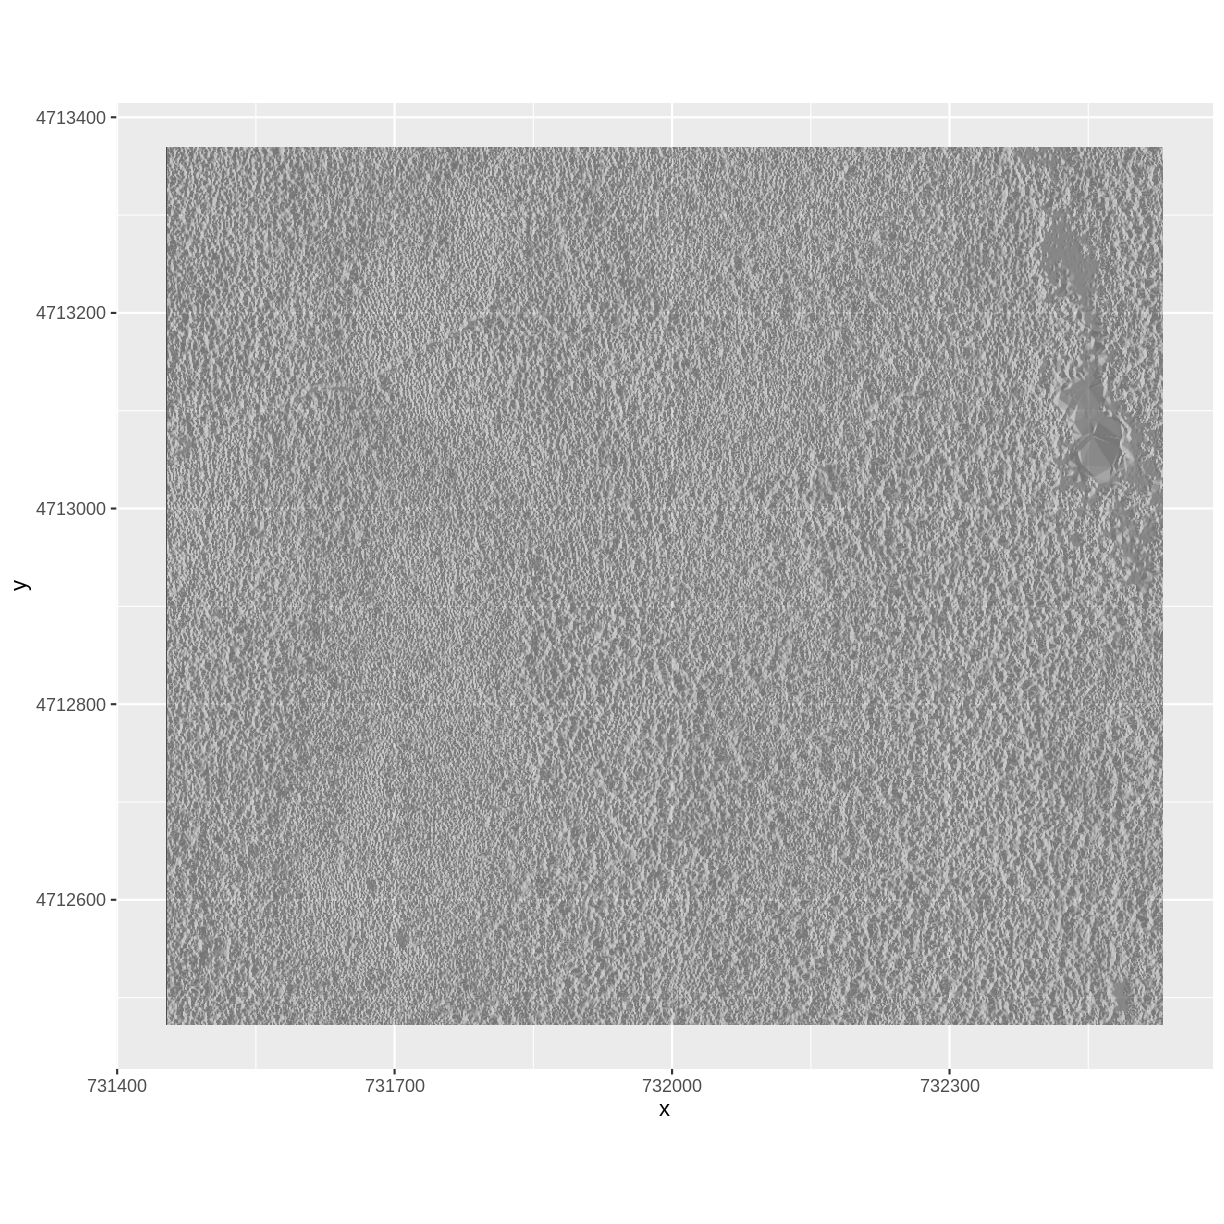 plot of chunk raster-hillshade